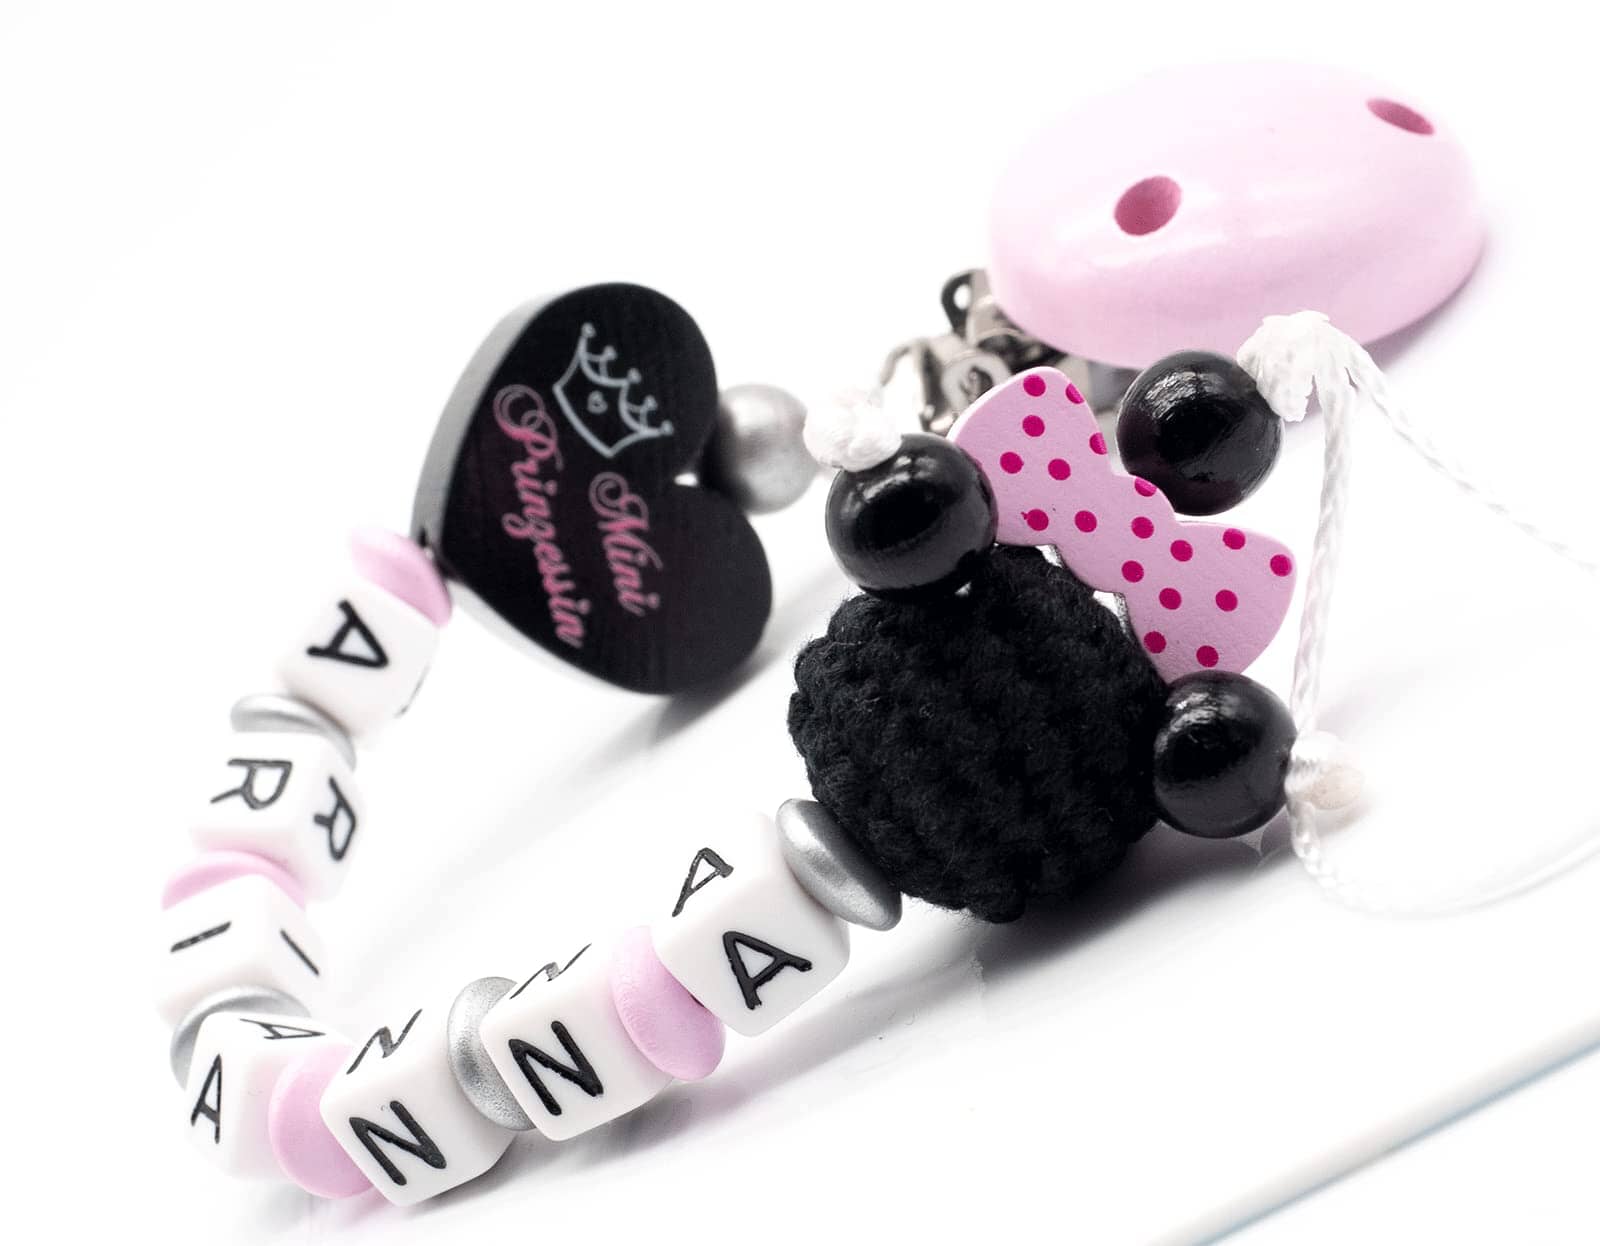 Schnullerkette mit Namen Mini Prinzessin + Maus mit Schleife rosa silber schwarz Schnullerkette minipishop 